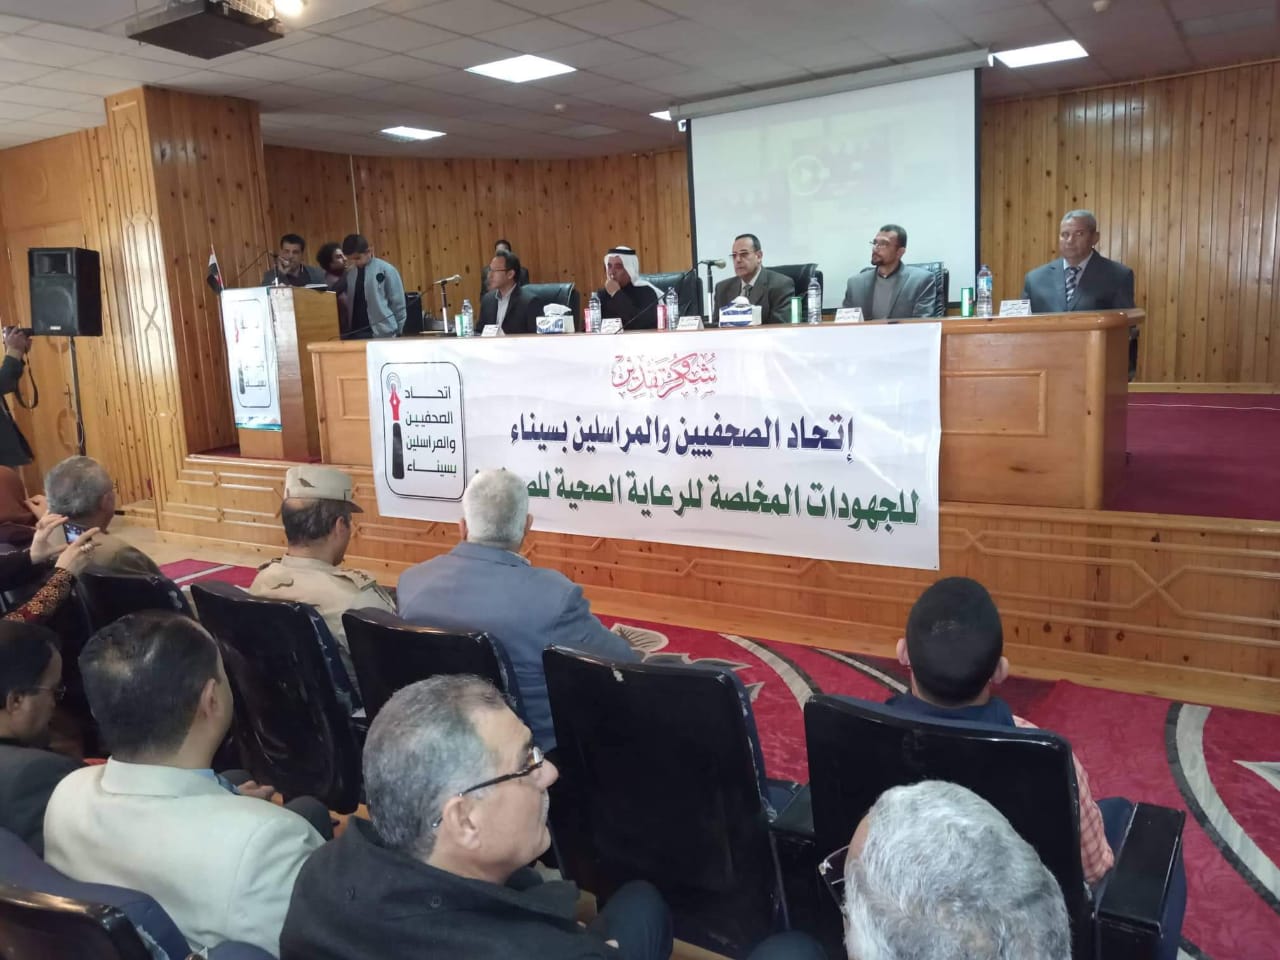 حفل تكريم اتحاد الصحفيين والمراسلين بسيناء الكادر الطبي بمستشفى العريش (6)